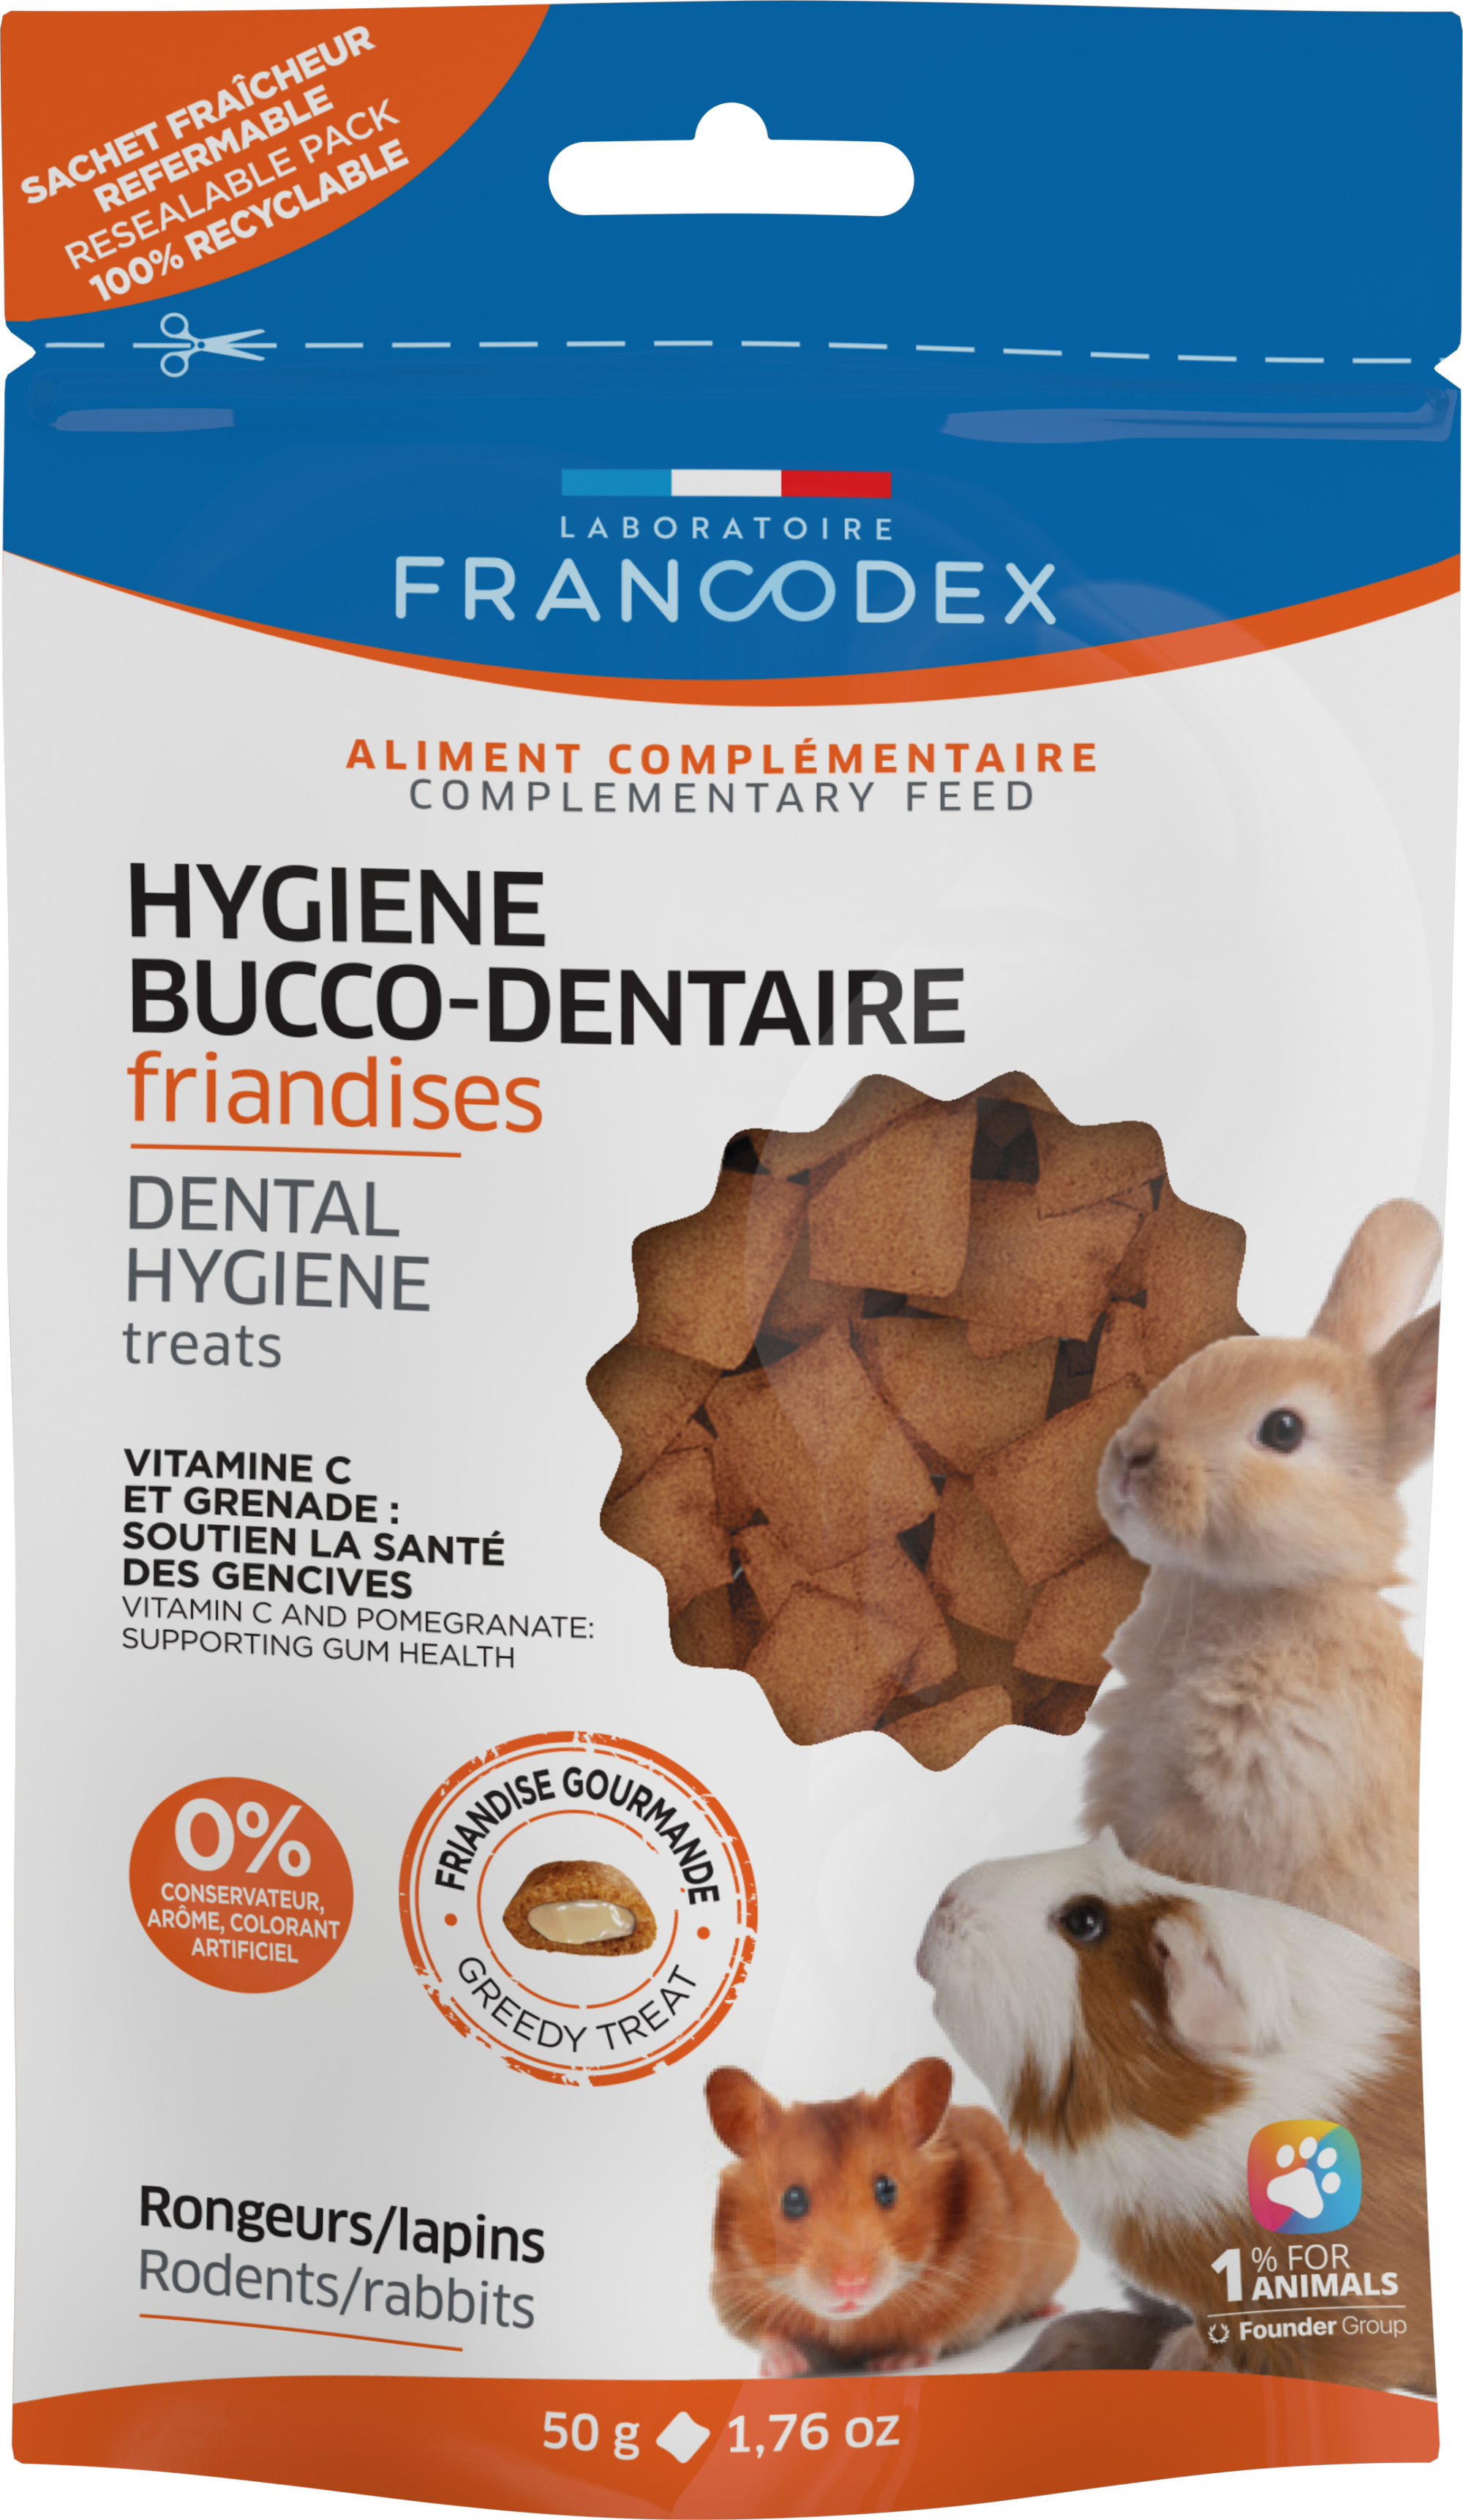 Francodex Trattamento per l'igiene orale di roditori e conigli